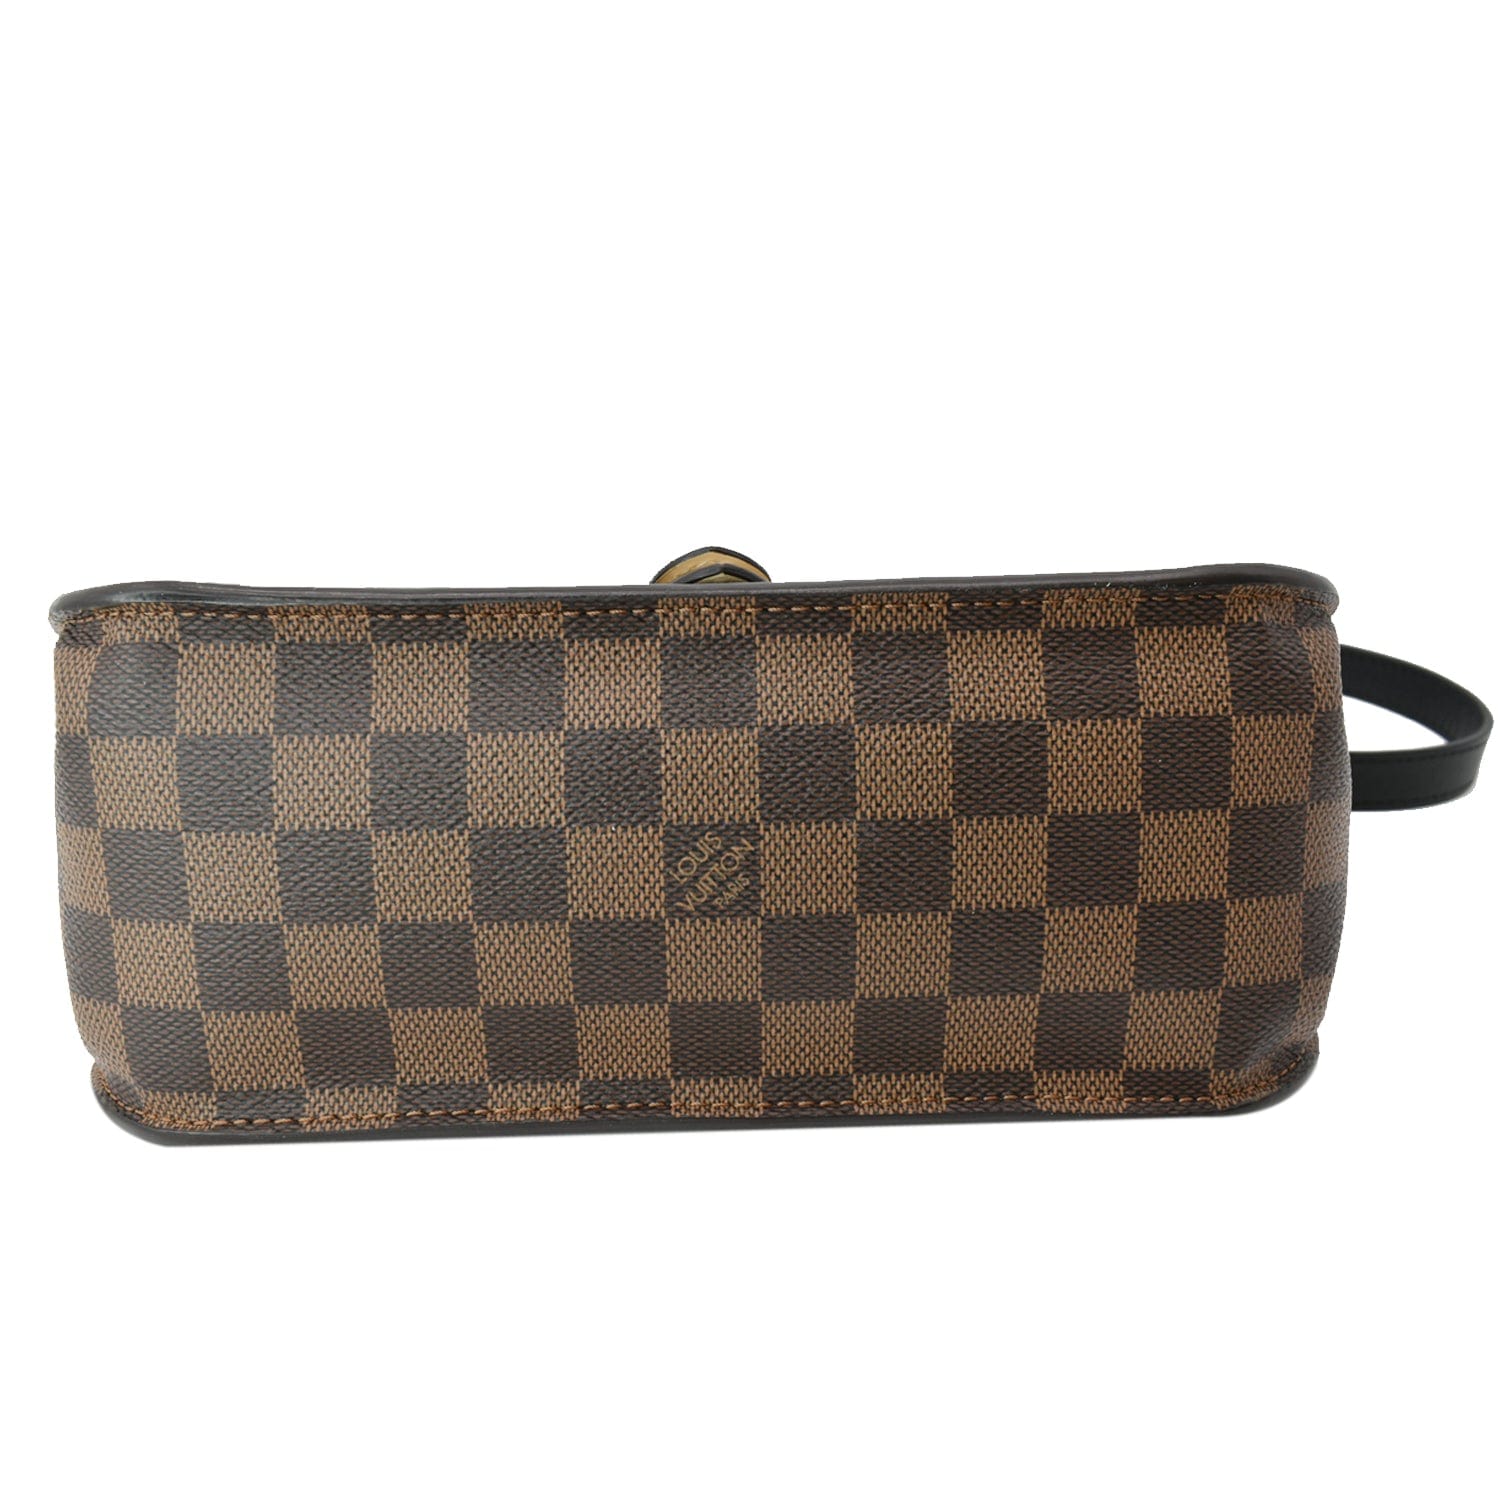 Louis Vuitton, Bags, Louis Vuitton Brown Damier Eben Beaumarchais Handbag